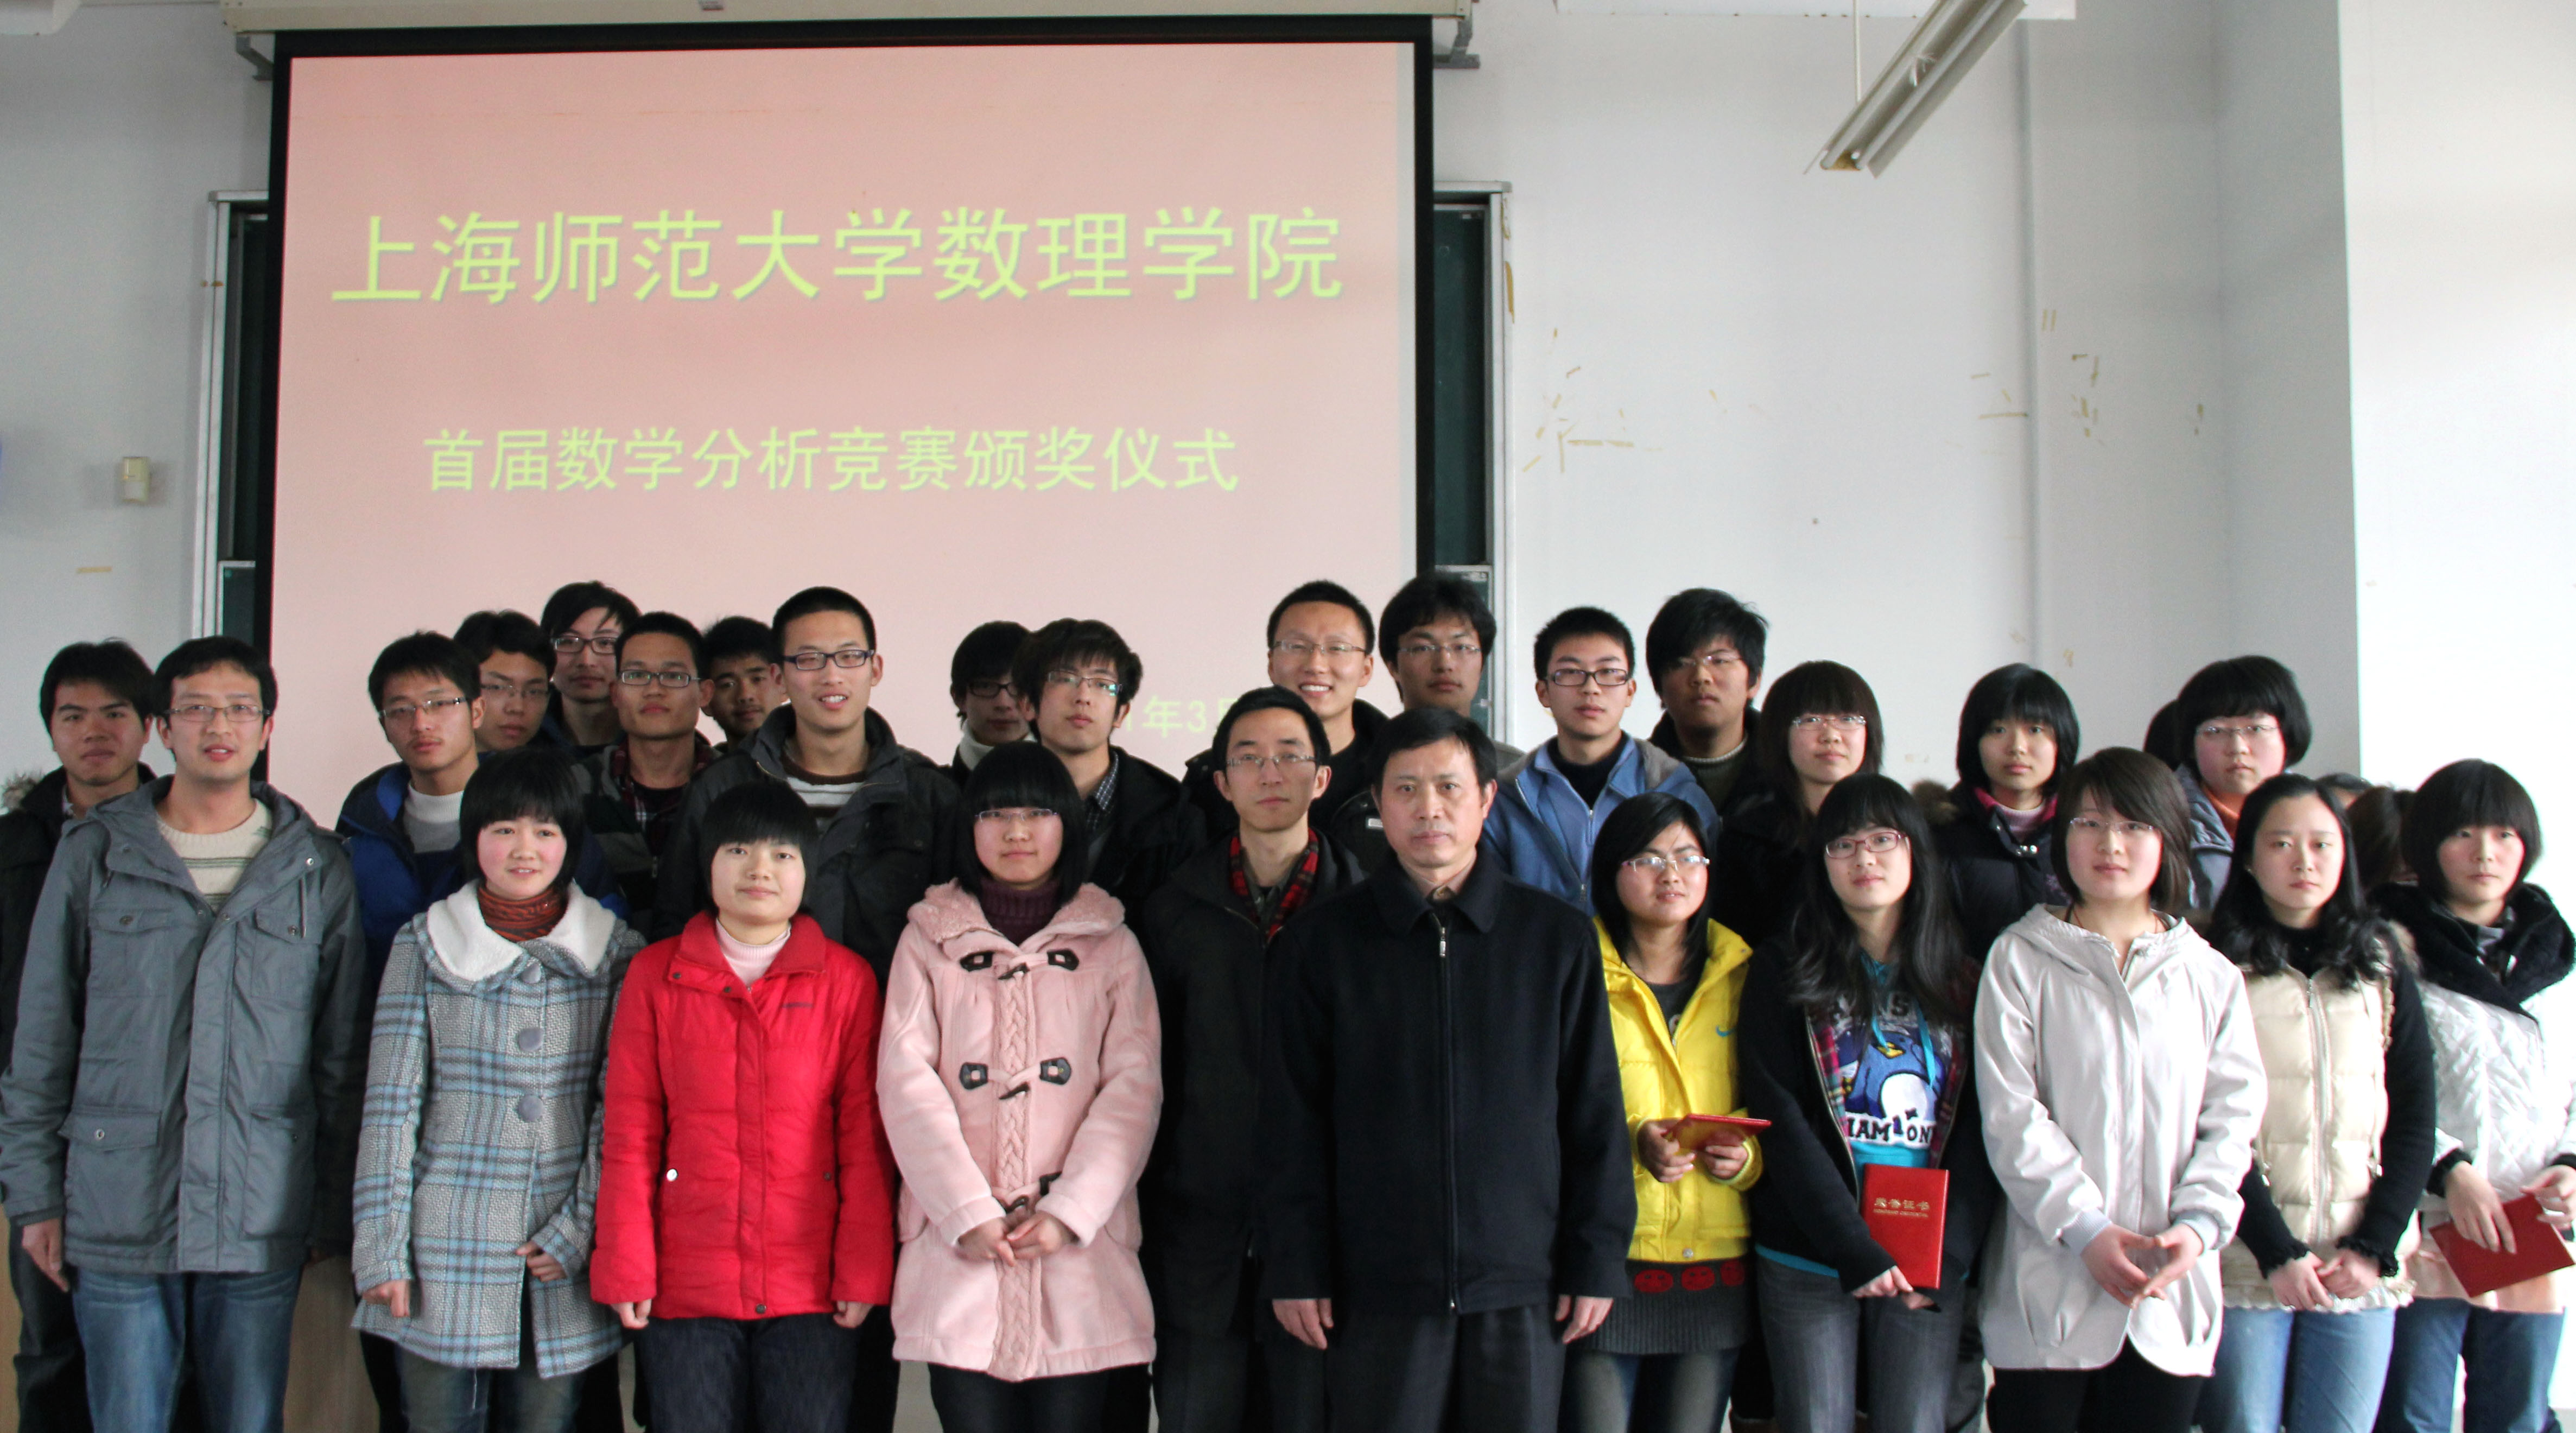 上海師範大學數理信息學院